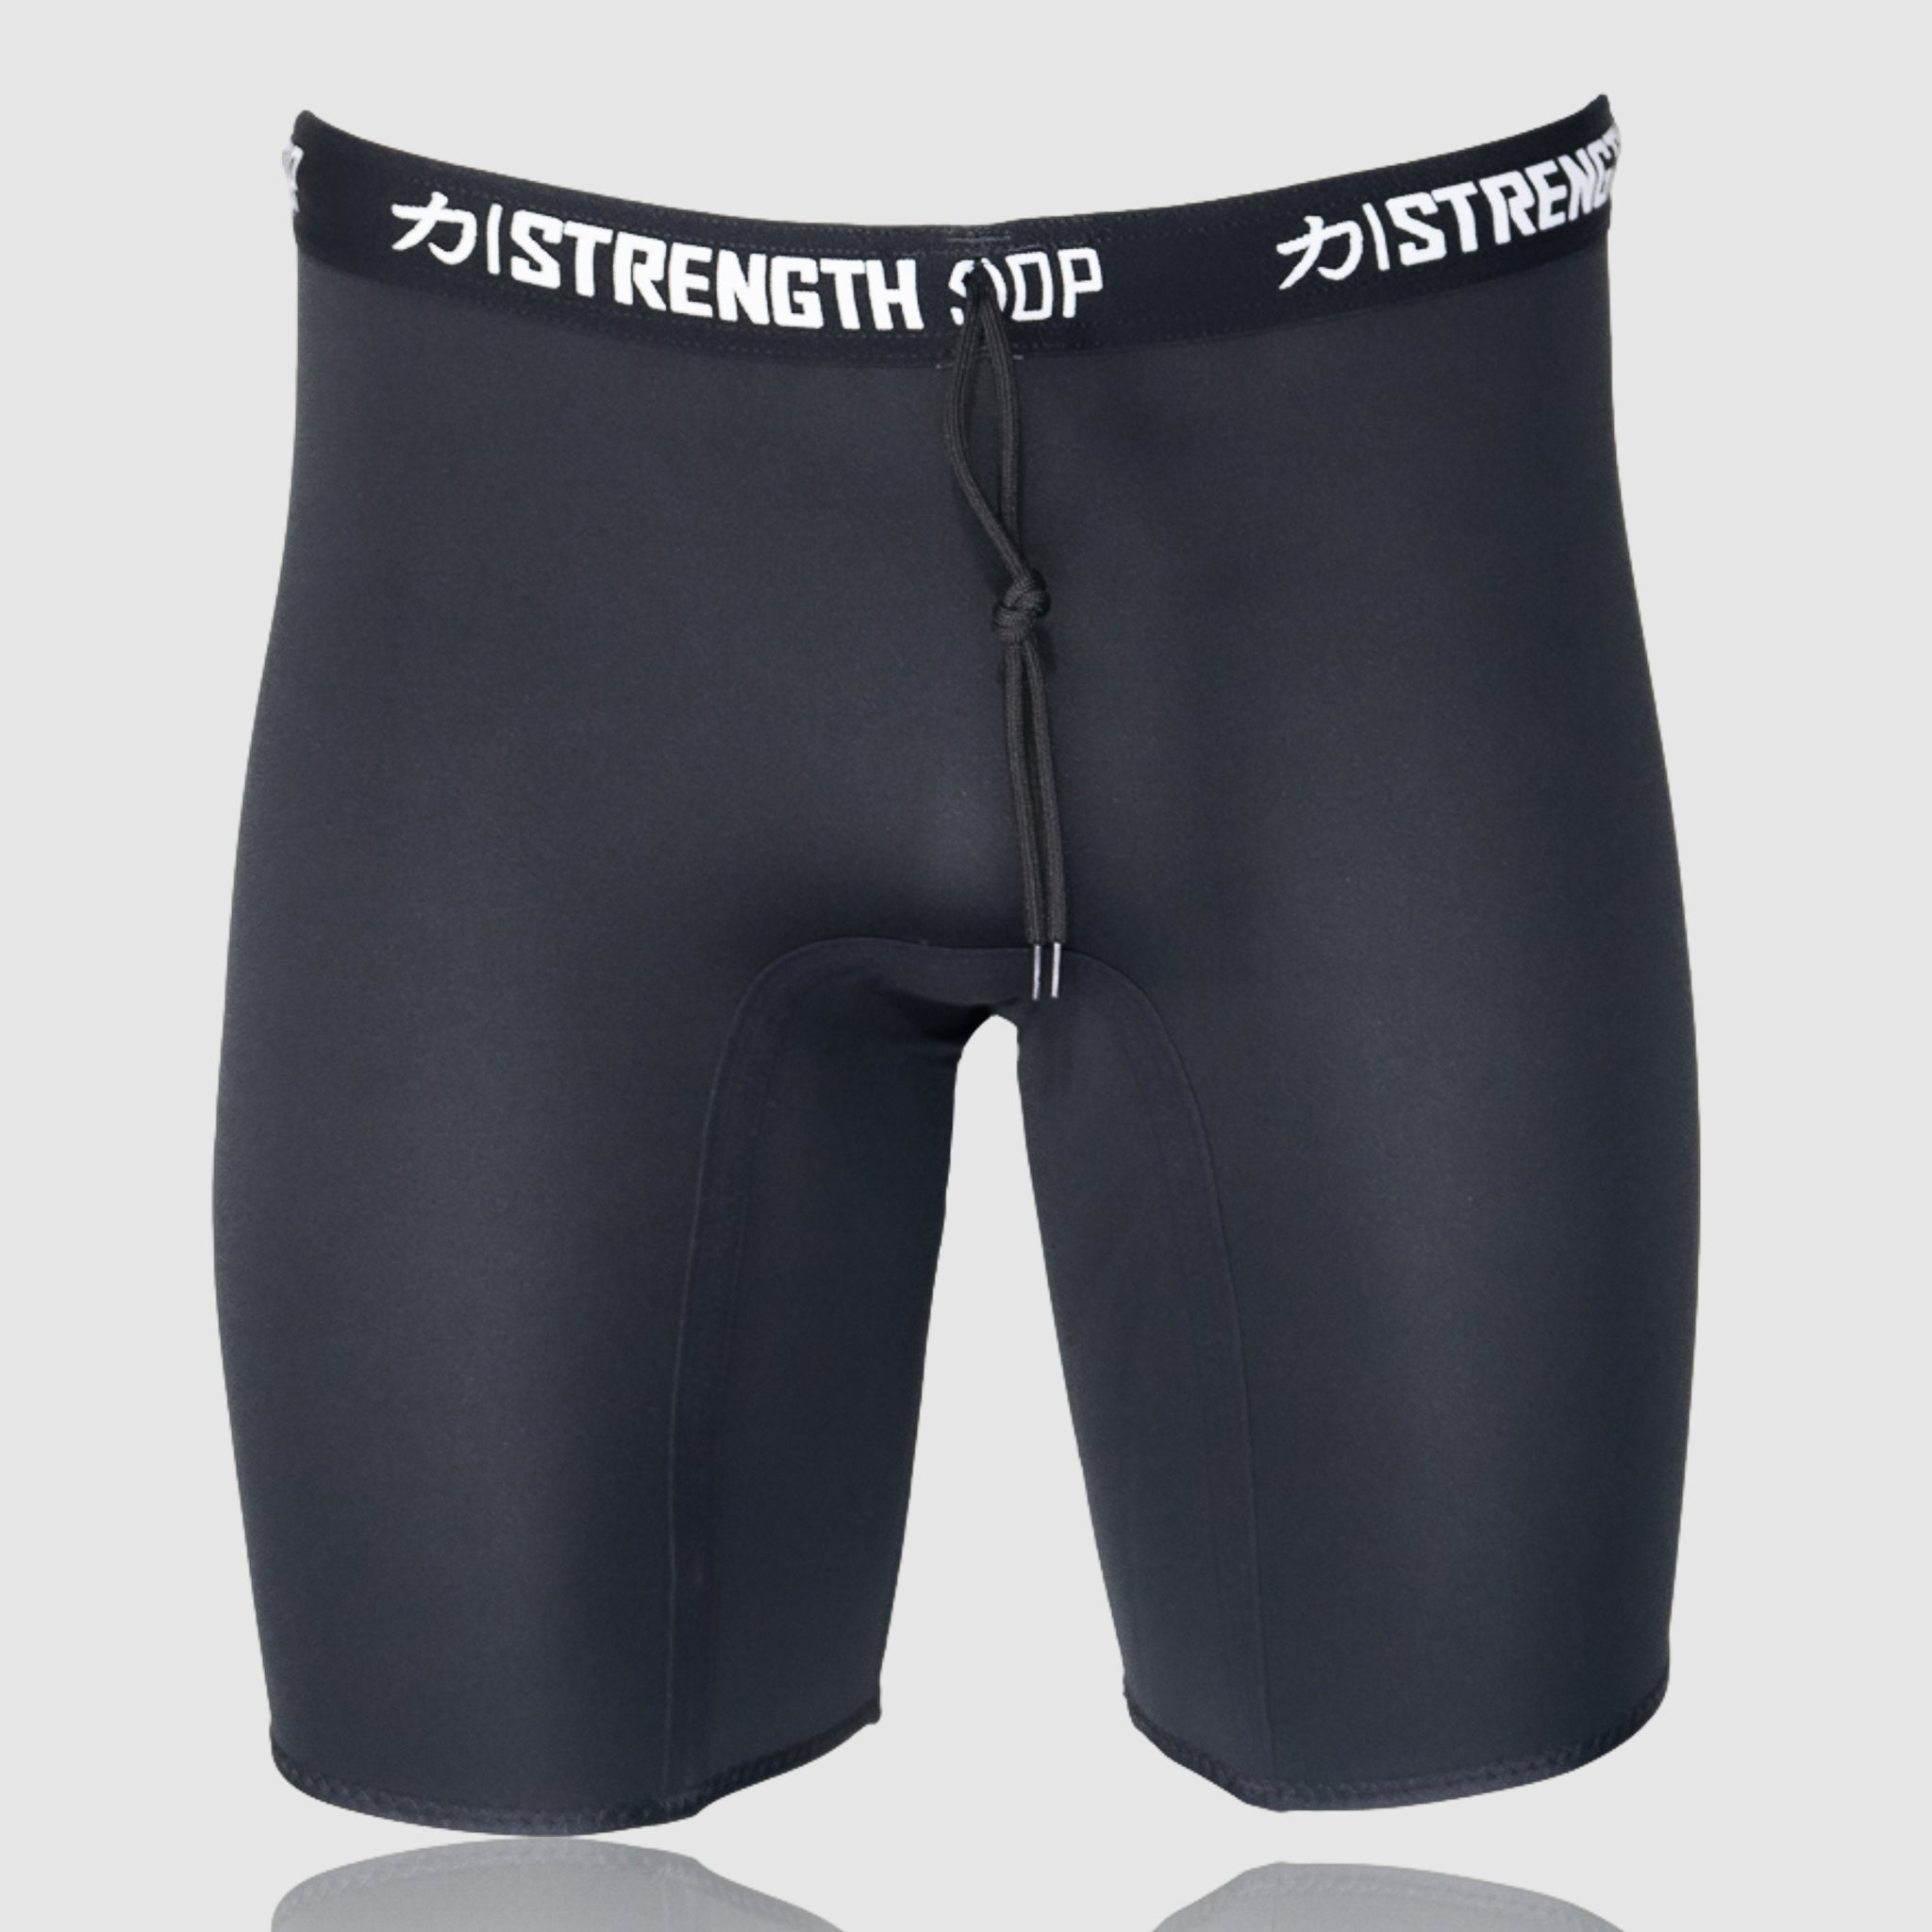 Strongman Shorts - 2.5MM Neoprene